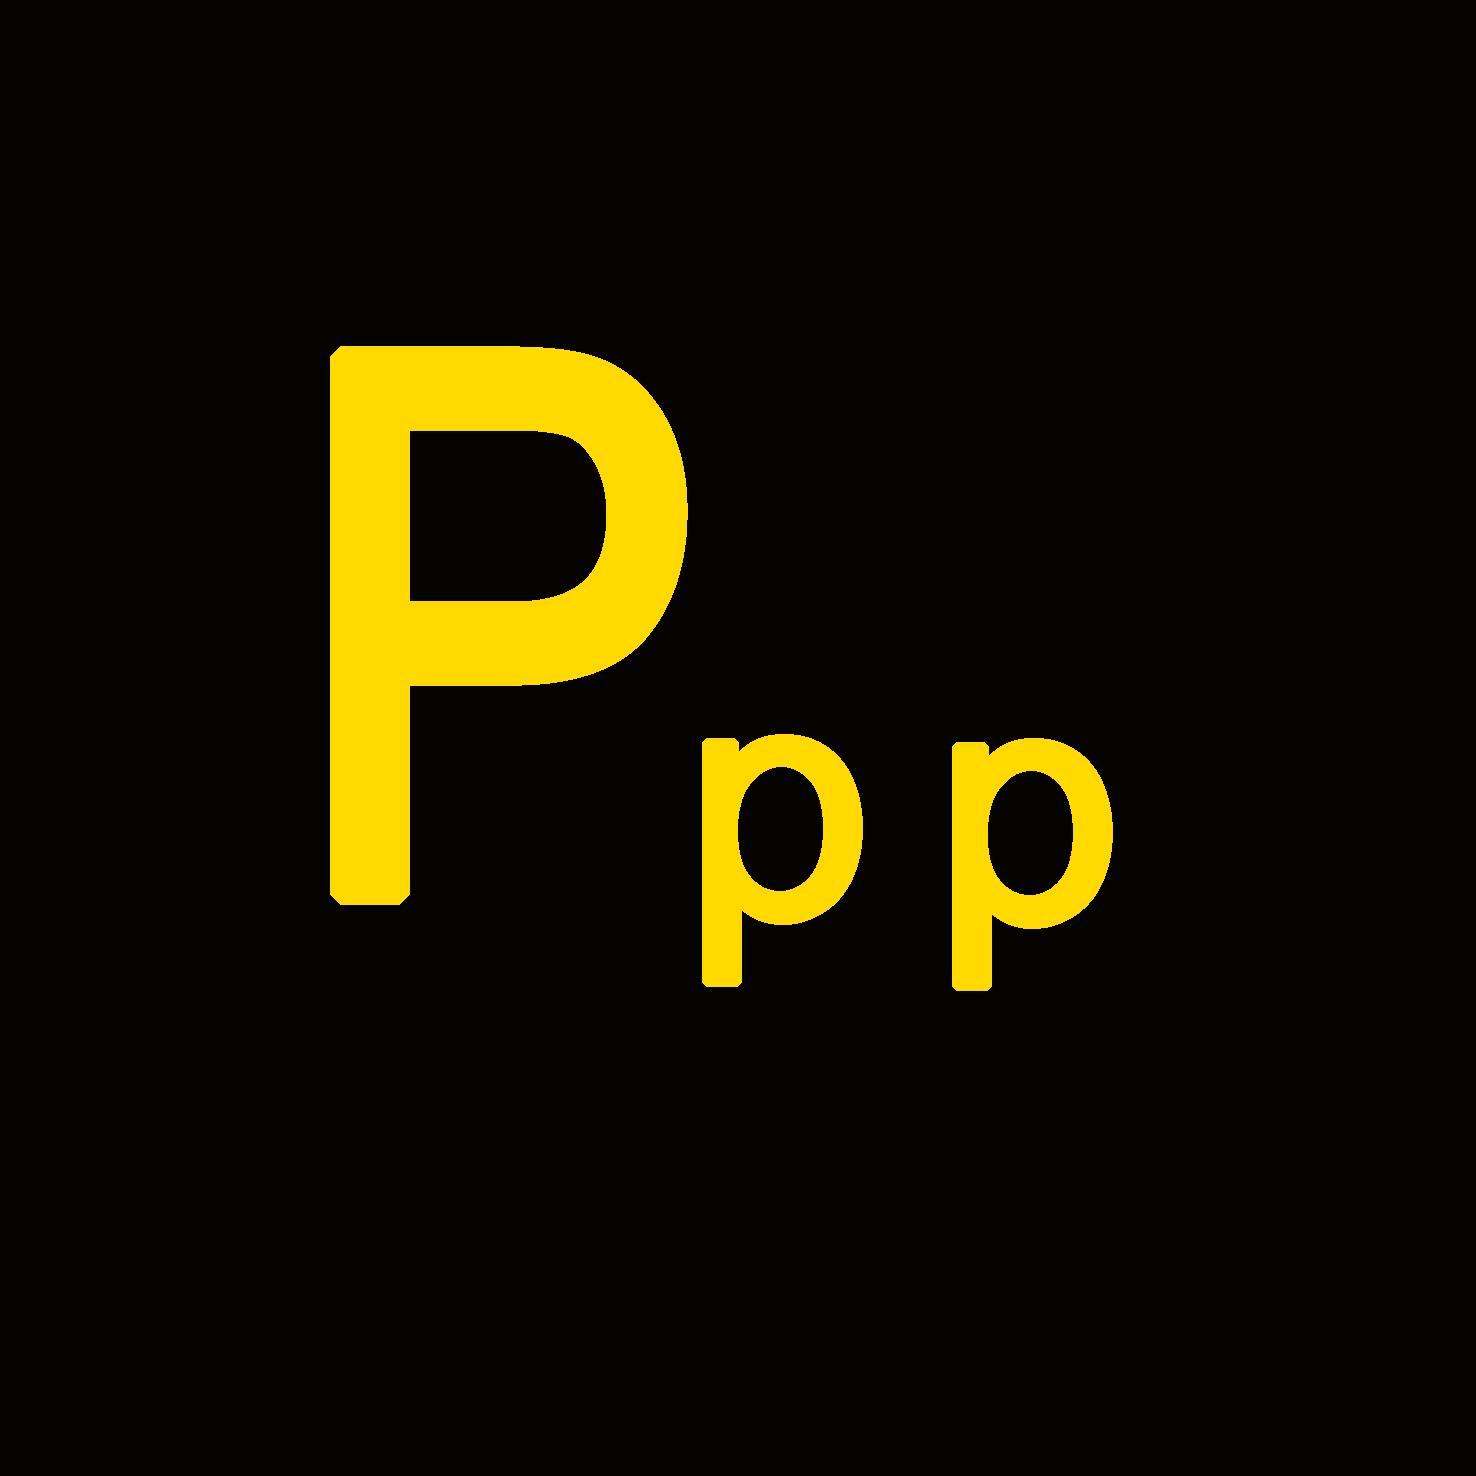 Personen - P